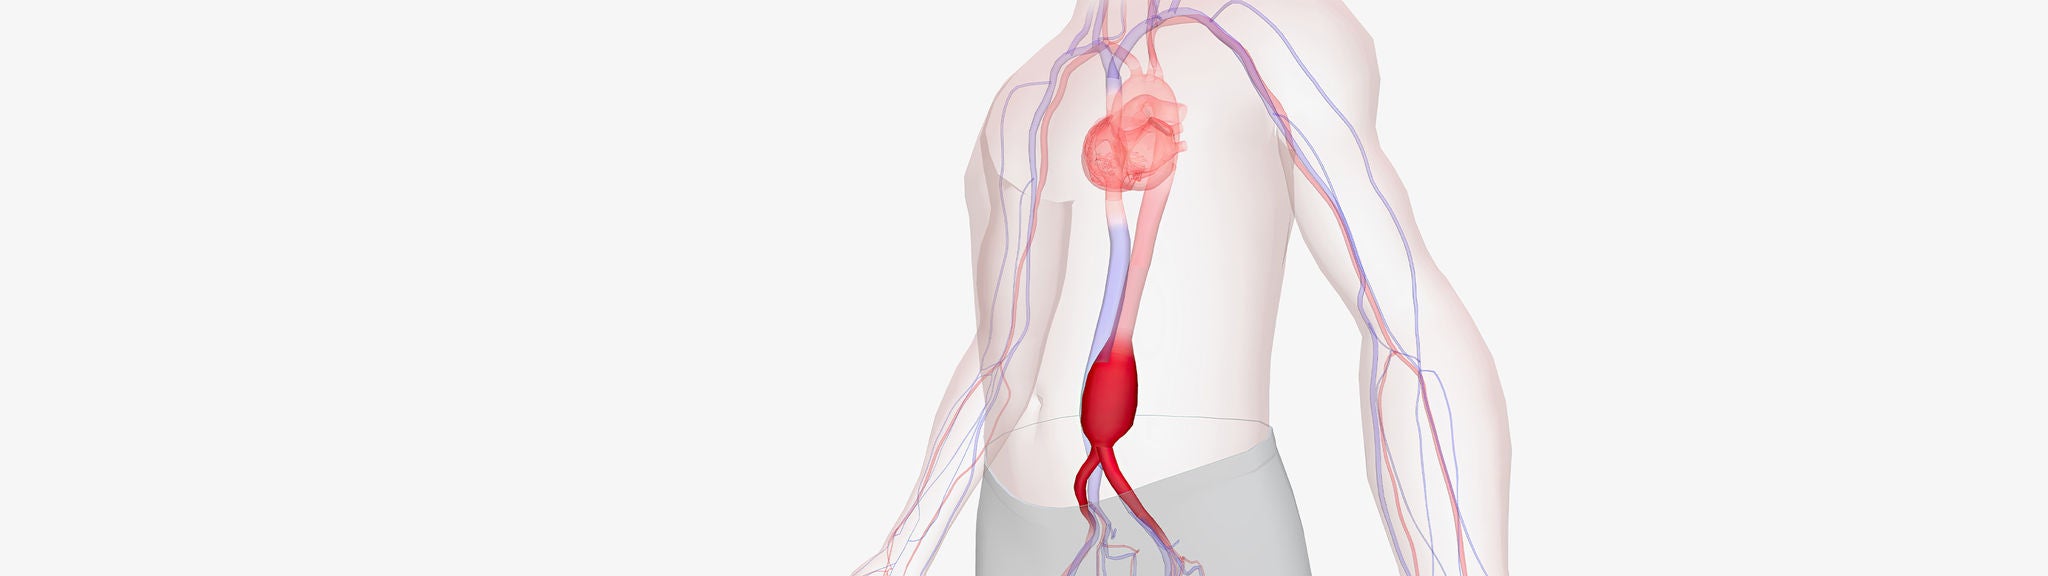 Eine Grafik zeigt eine Ausweitung der Hauptschlagader im Bauch.